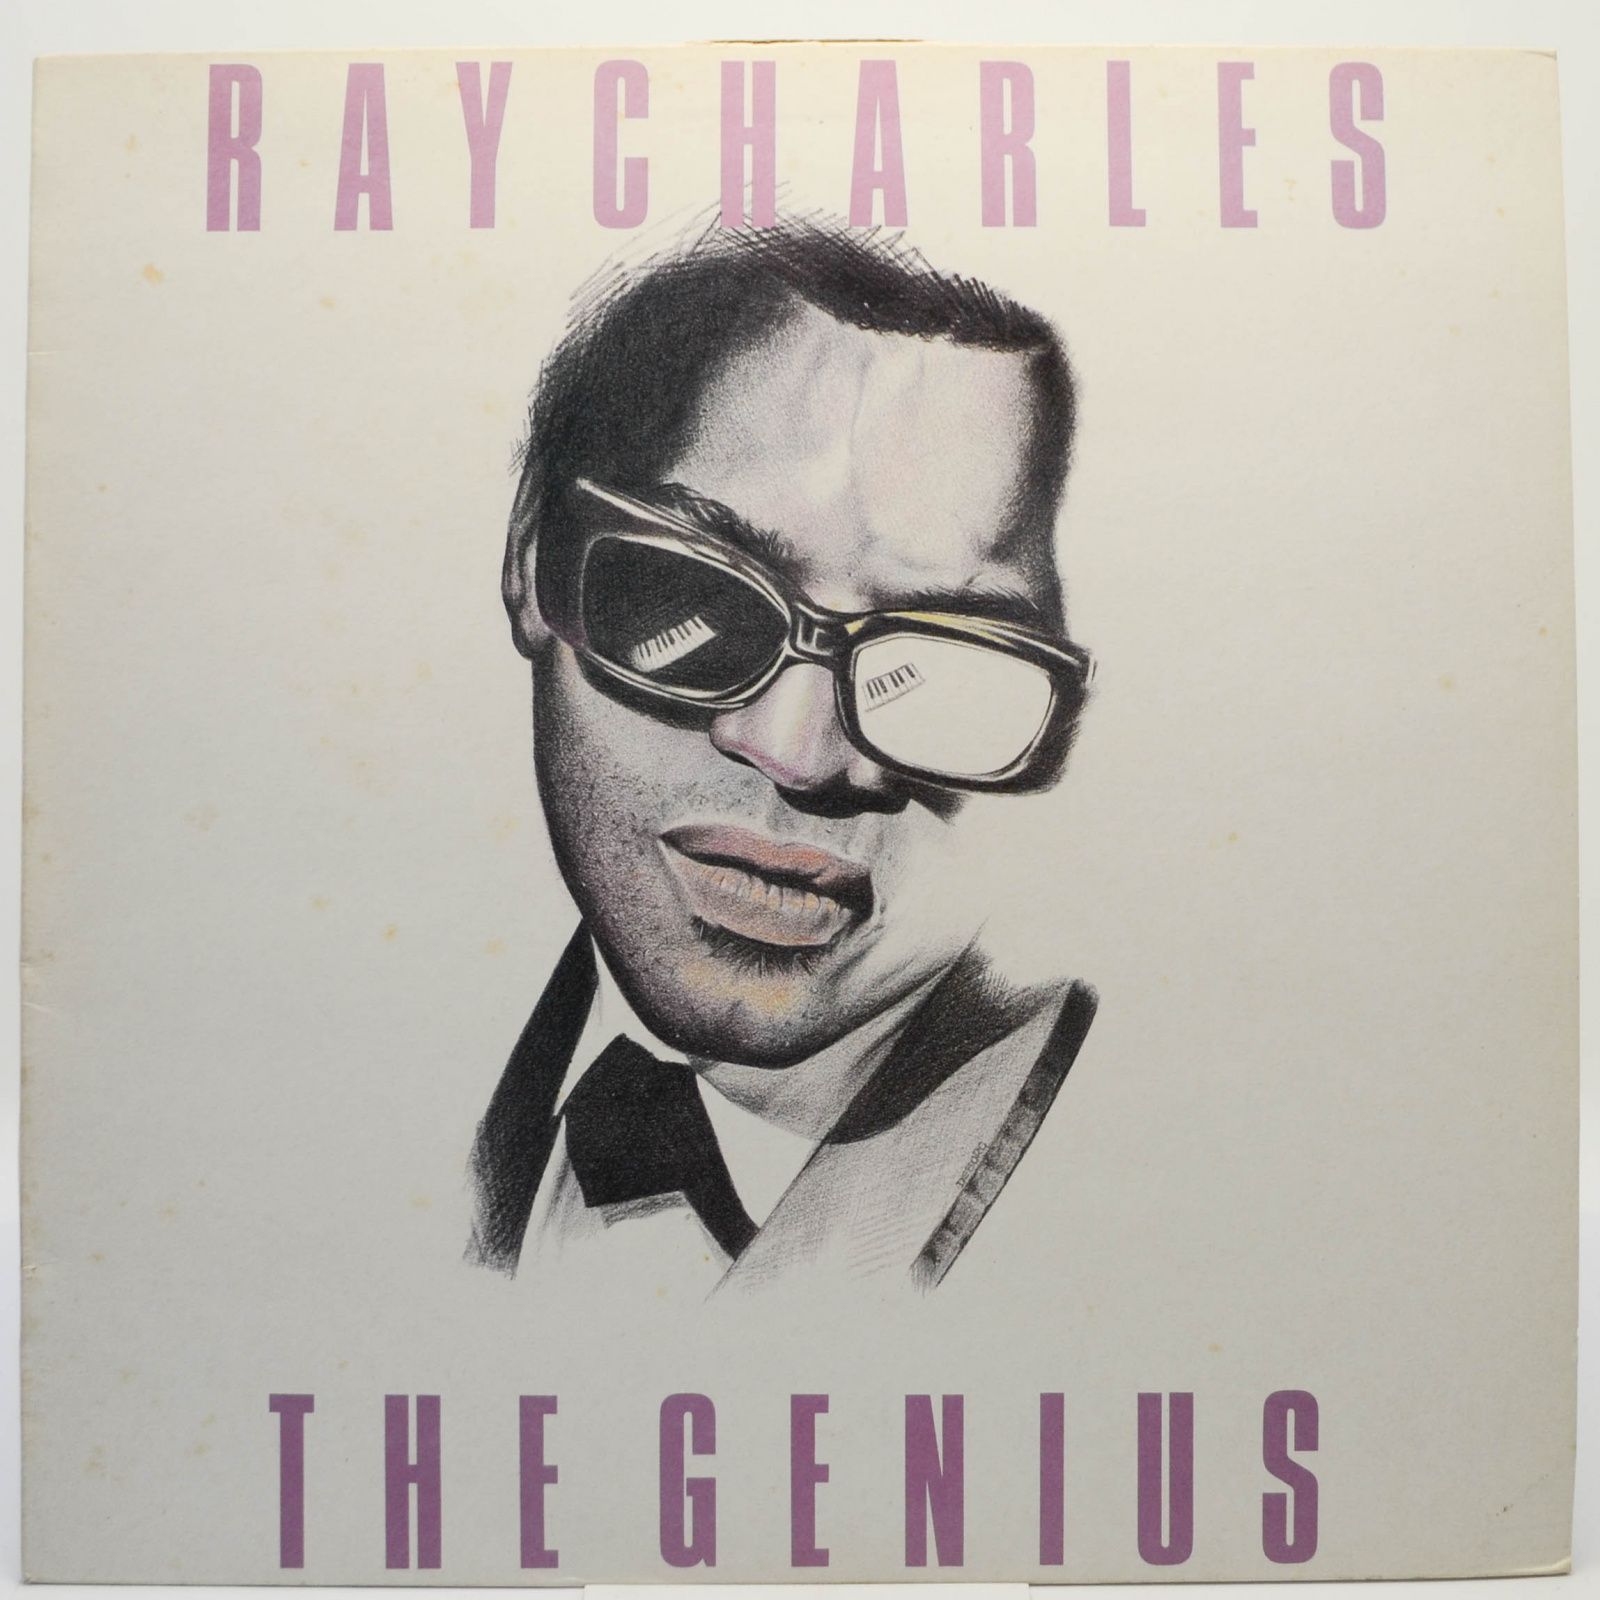 Ray Charles — The Genius (UK), 1988